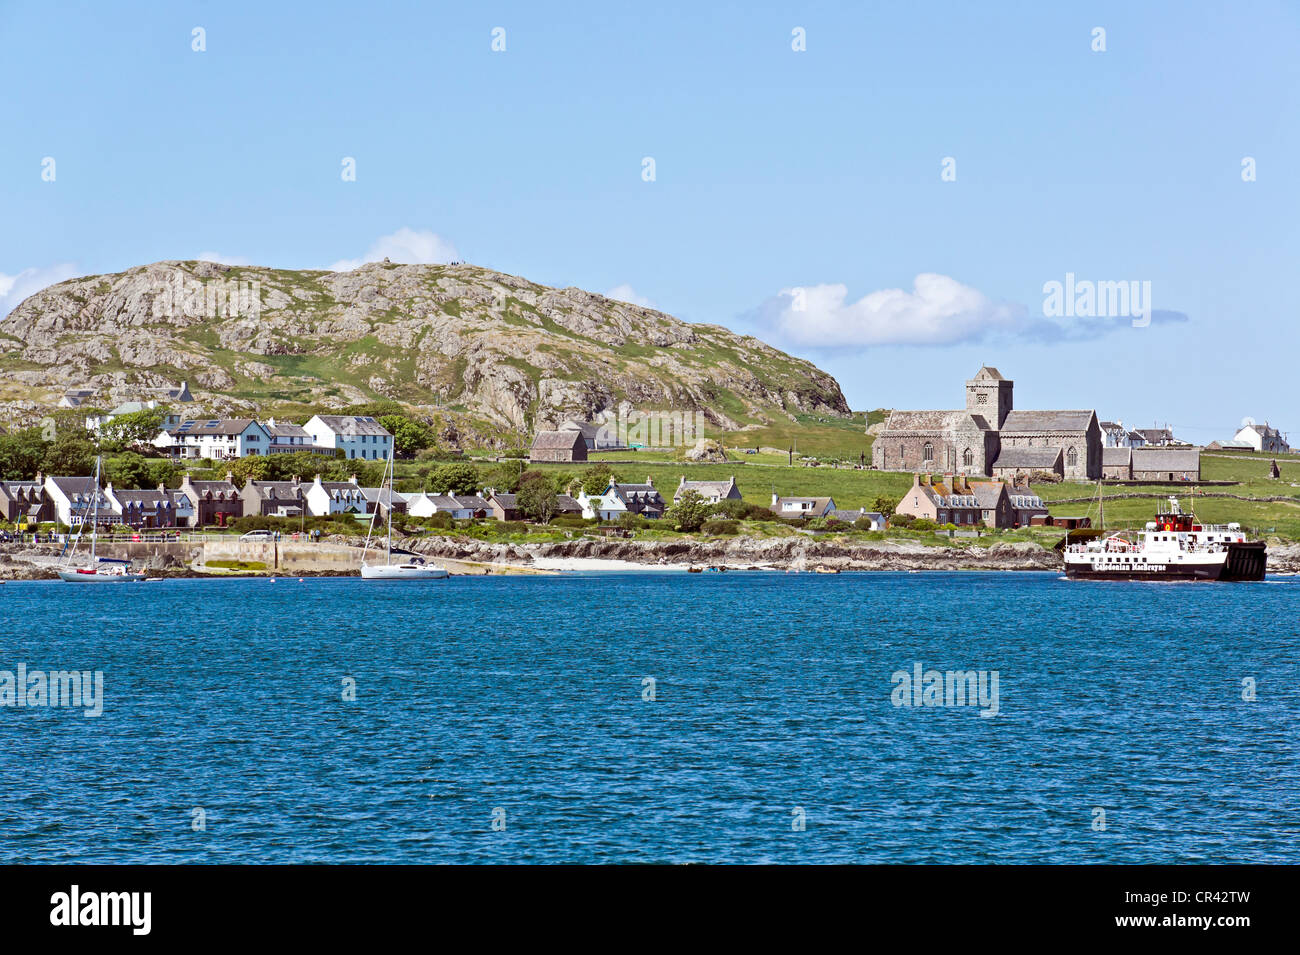 Historic Scotland di proprietà e mantenuto Iona Abbey su isola di Iona off Mull in Scozia occidentale con traghetto Loch Buie che arrivano Foto Stock